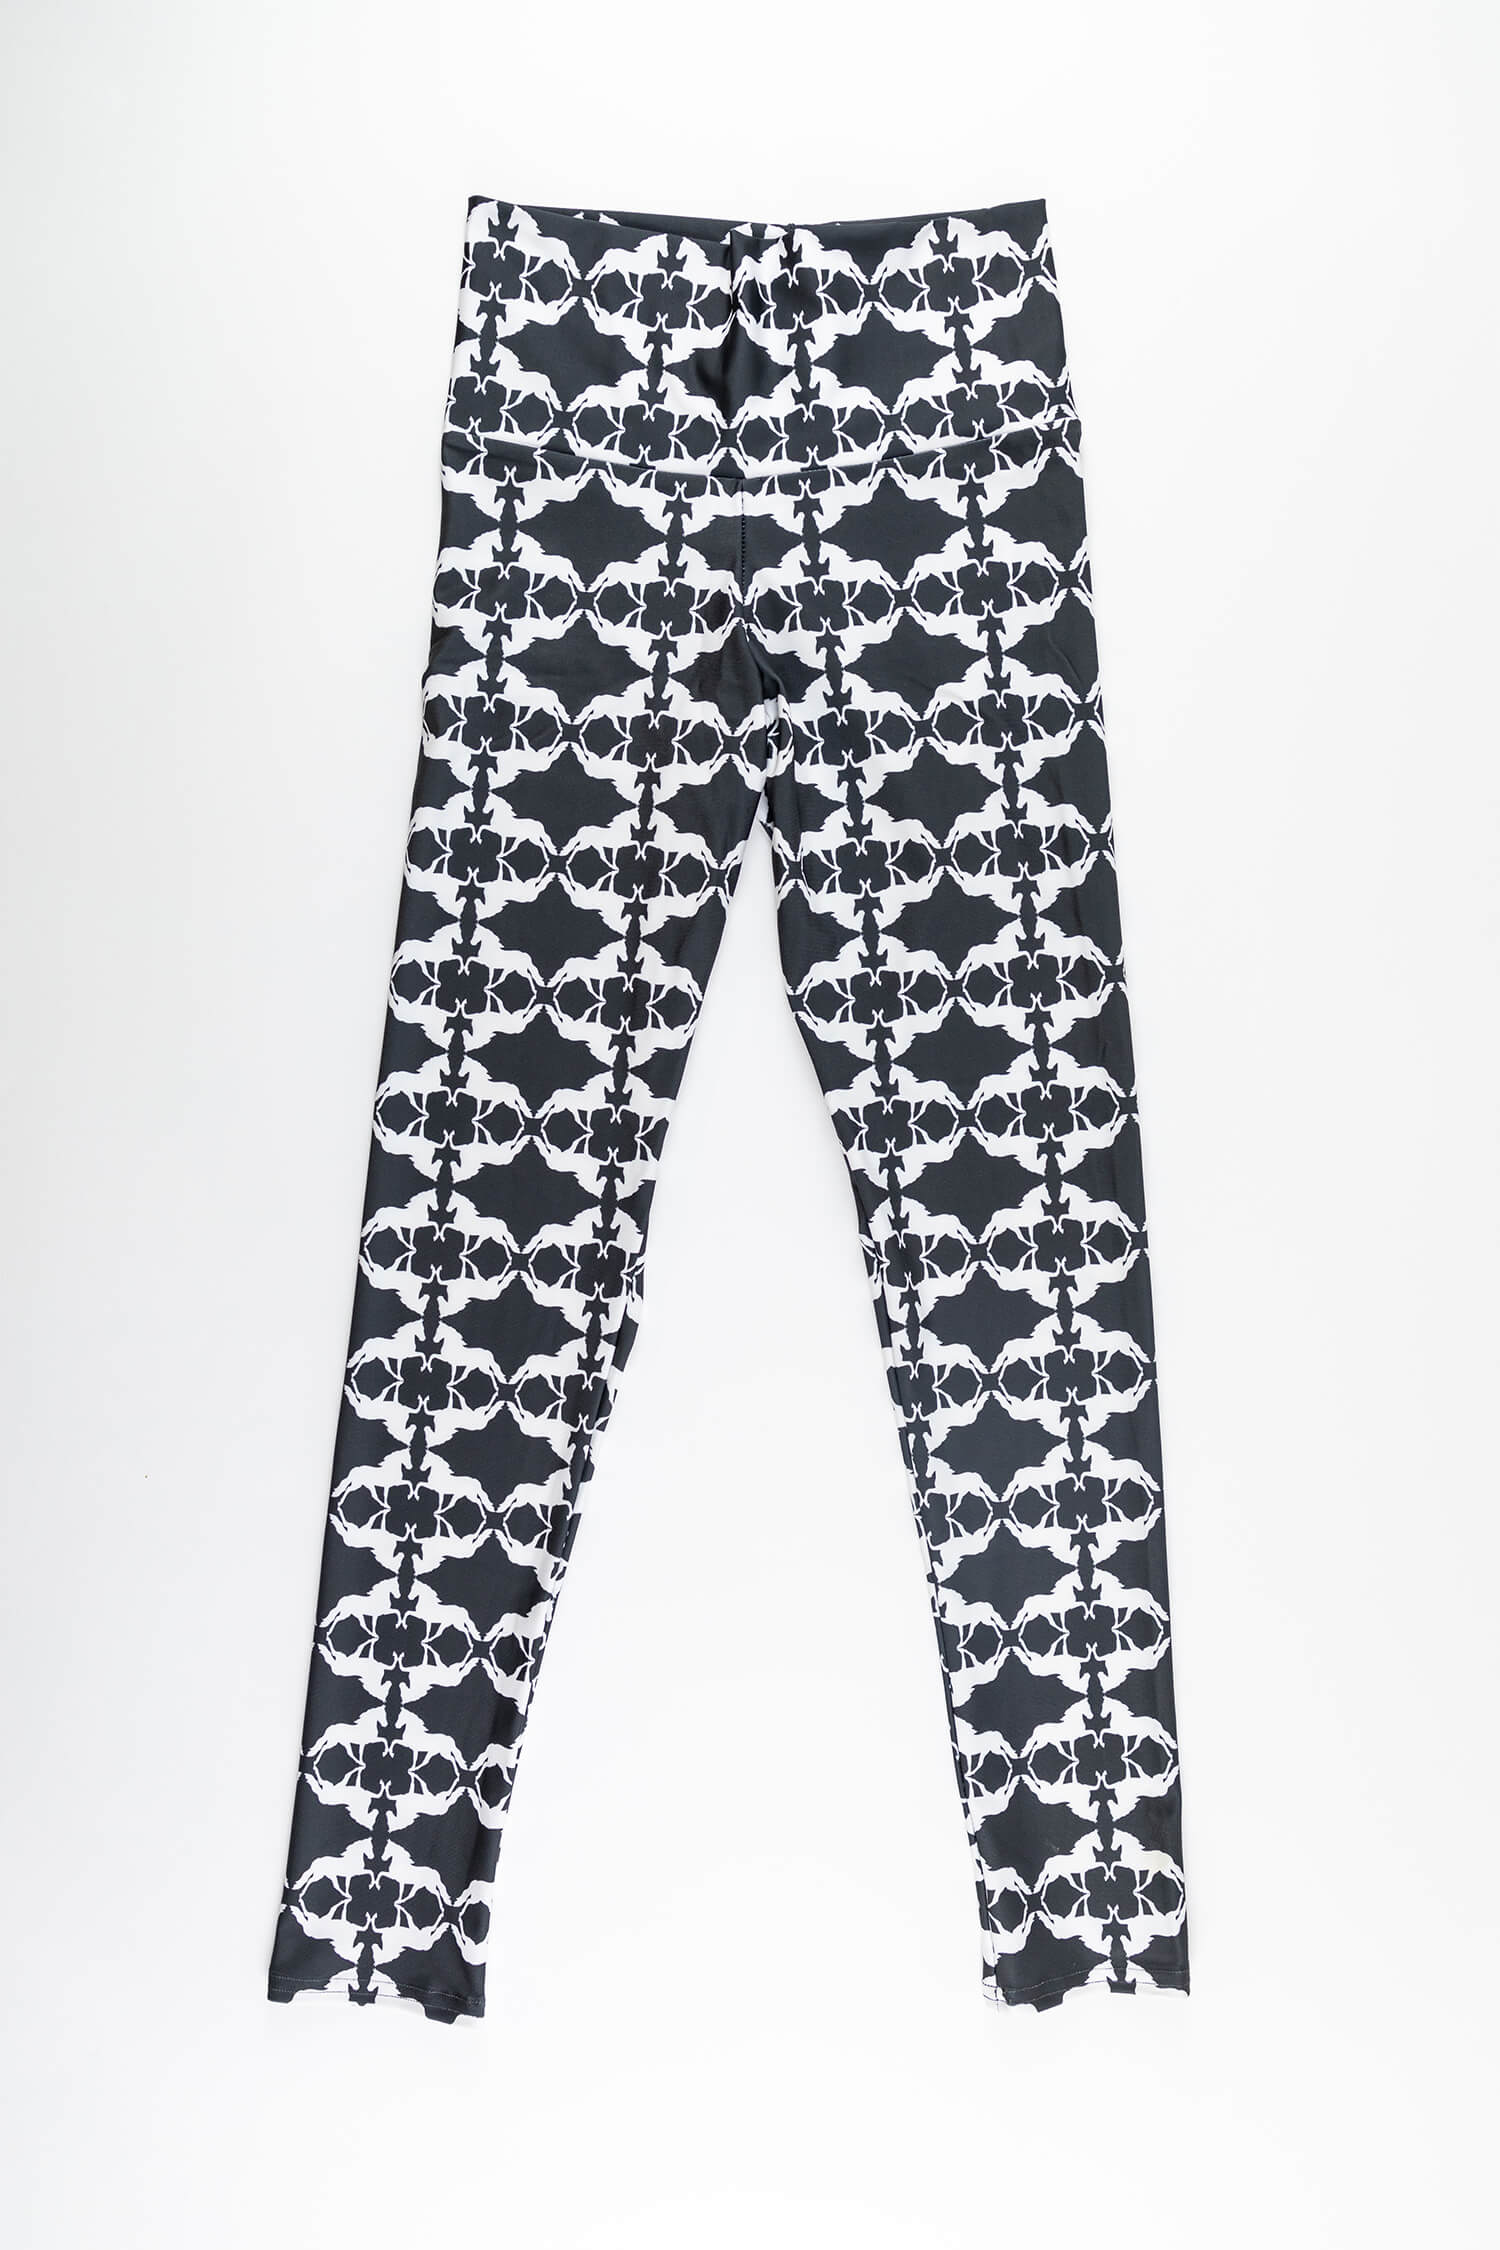 11 Lines Black and White RegiaArt - Leggings, polyester, spandex – REGIAART